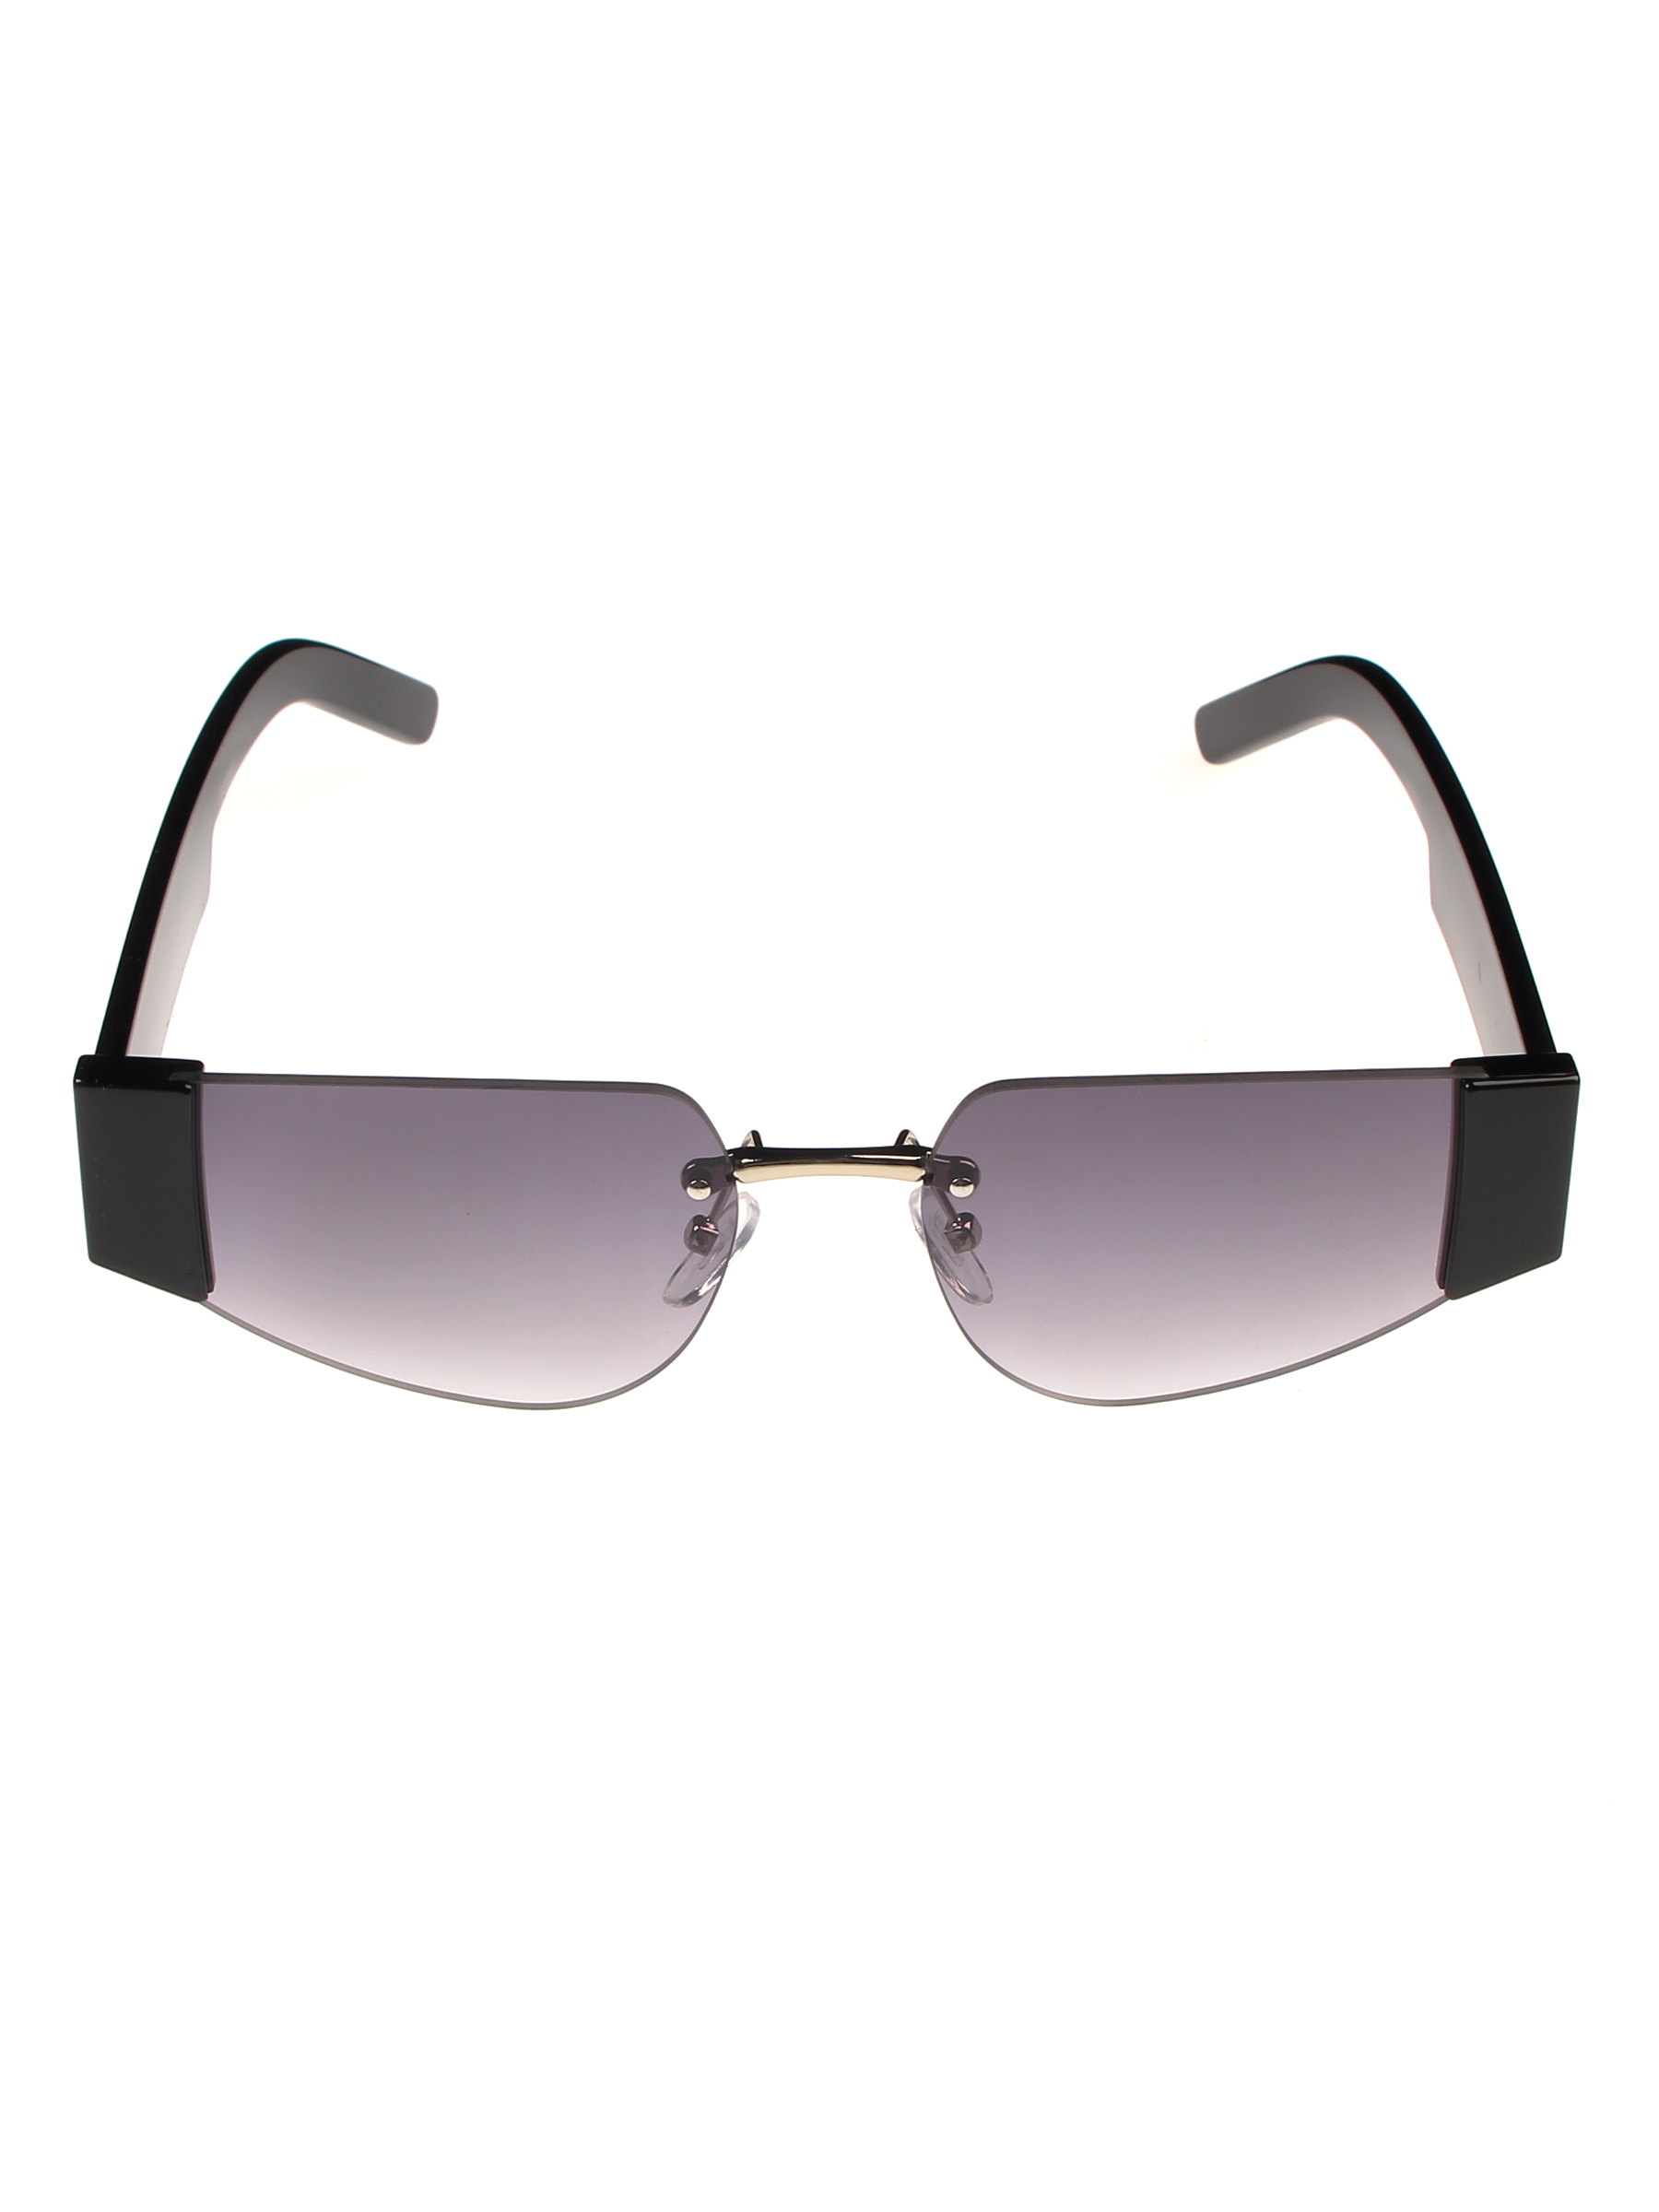 Солнцезащитные очки женские Pretty Mania NDP009 черные